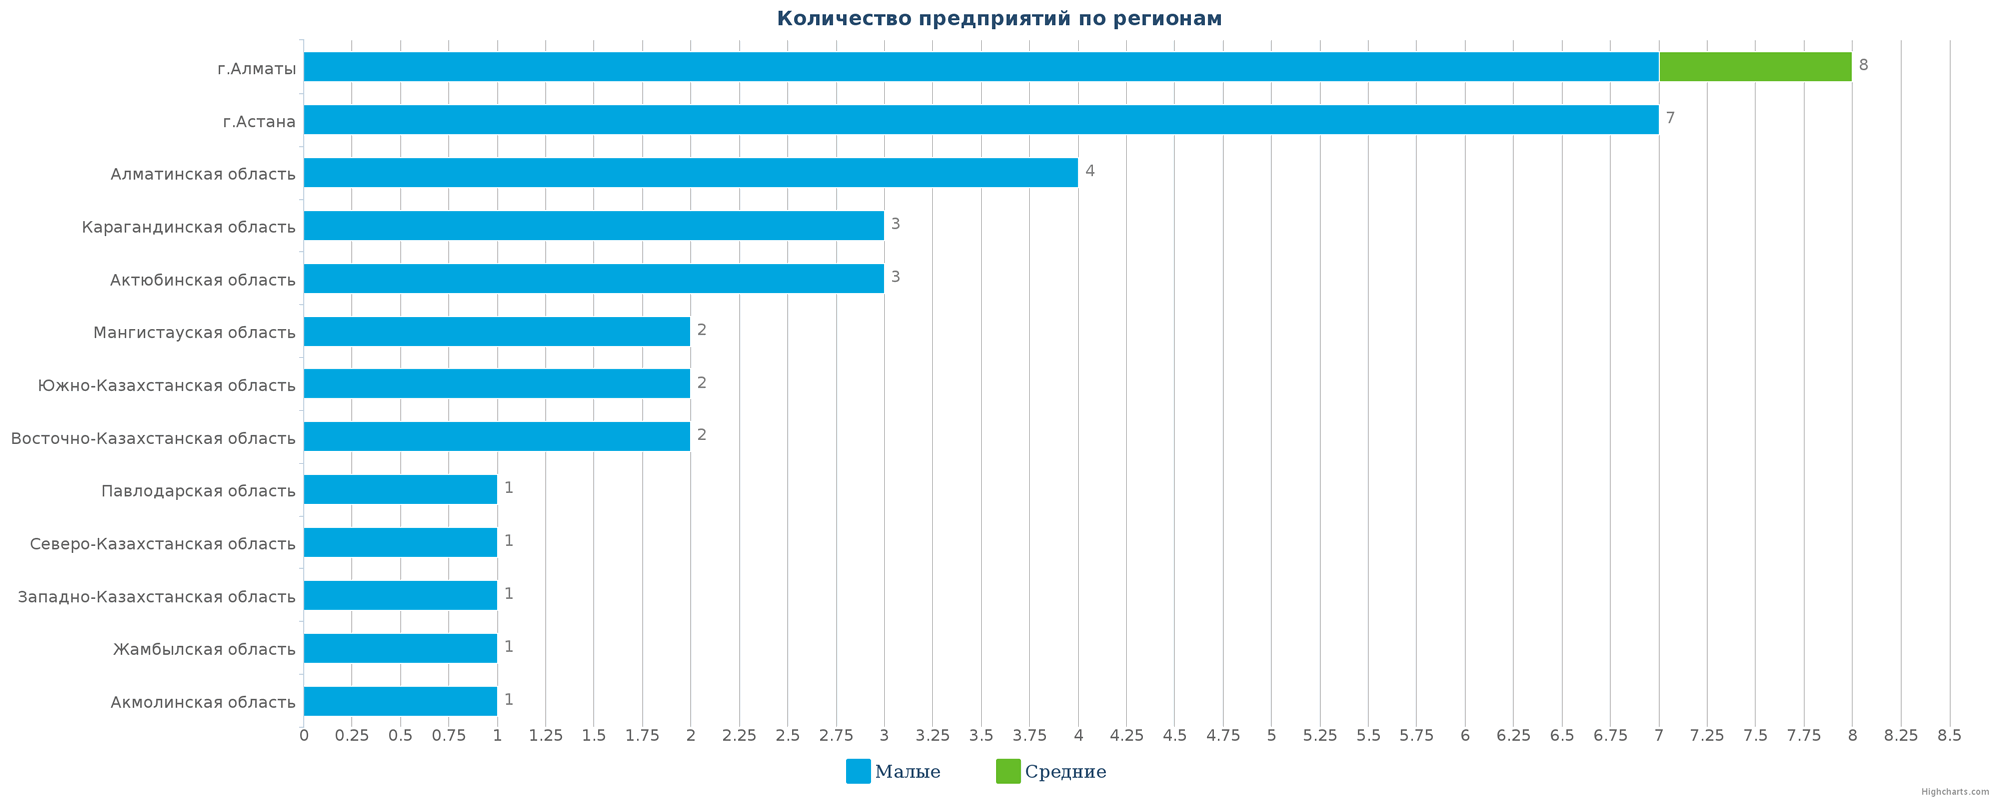 Количество новых производственных компаний по регионам Казахстана